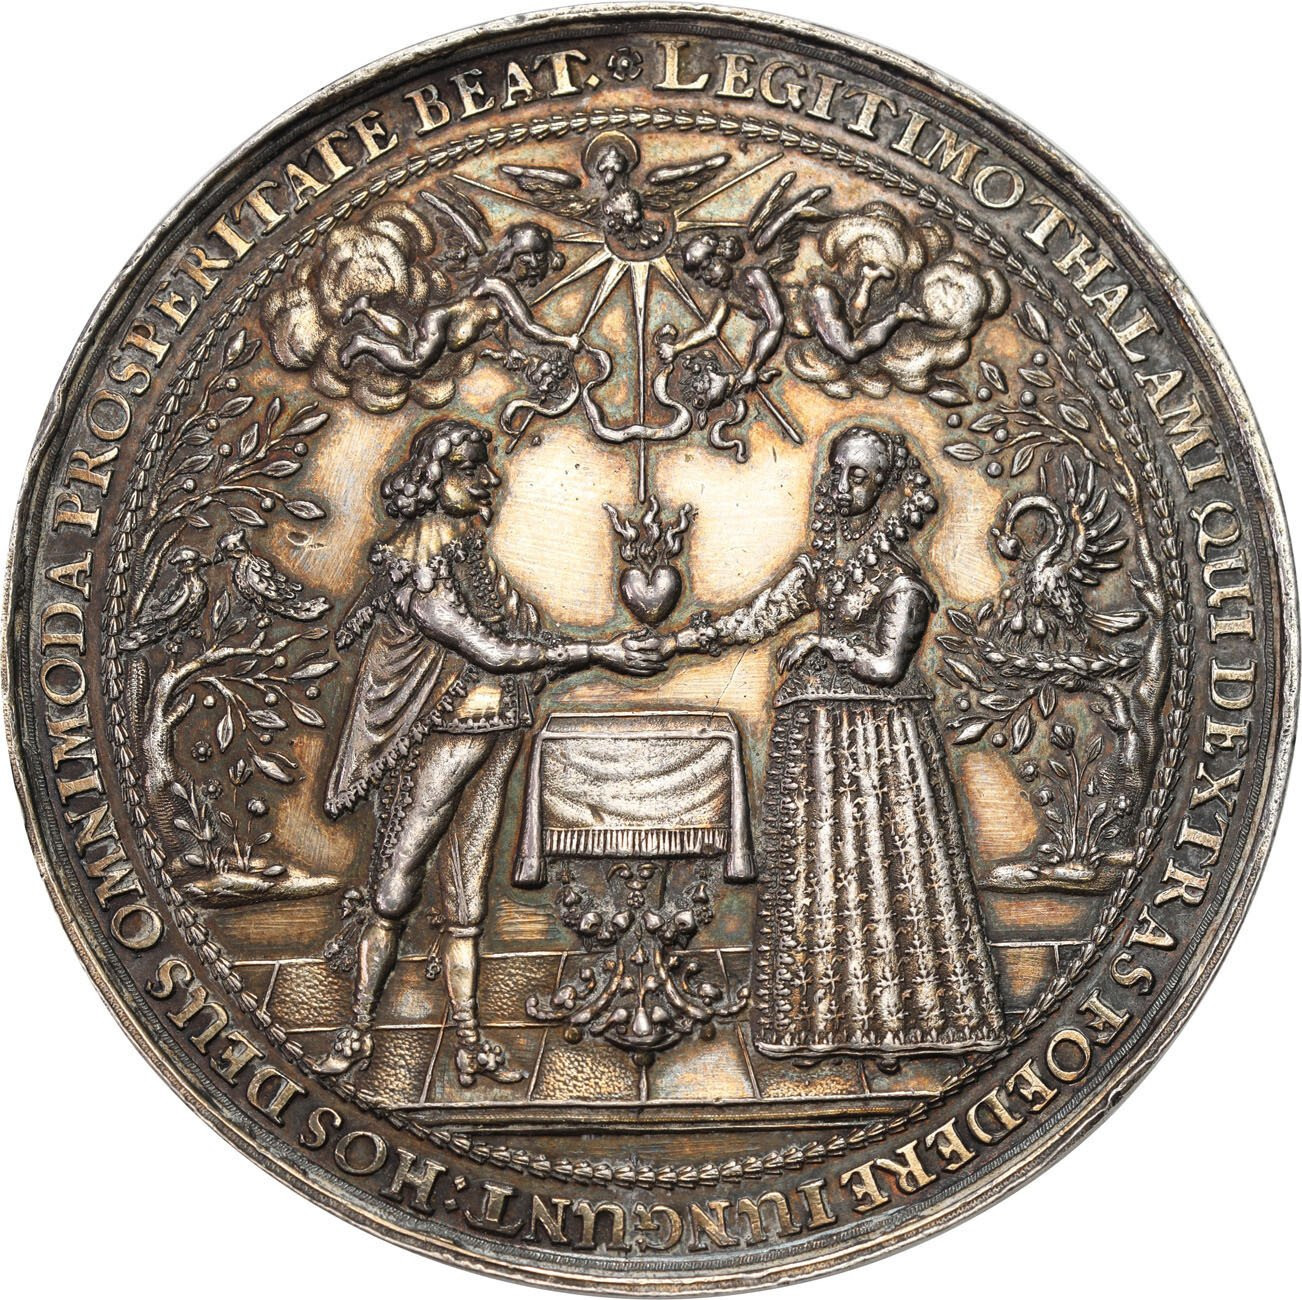 Władysław IV Waza. Medal zaślubinowy, Jan Höhn, Gdańsk, srebro - PIĘKNY